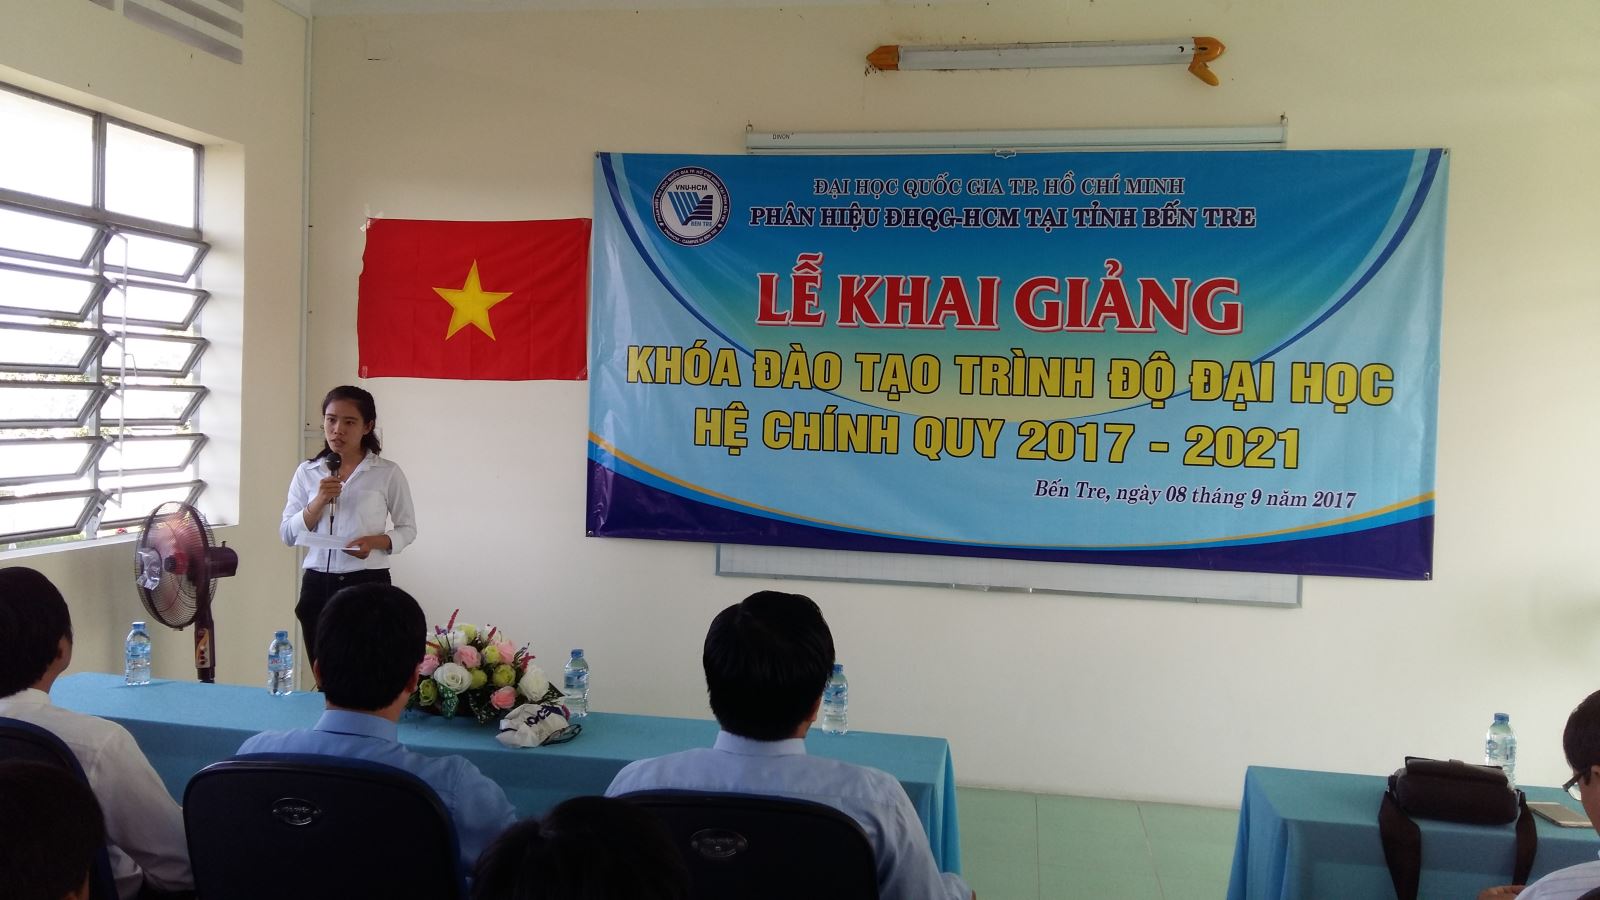 Khai giảng khóa đào tạo trình độ Đại học hệ chính quy đầu tiên ở Phân hiệu Đại học Quốc gia Thành phố Hồ Chí Minh tại tỉnh Bến Tre